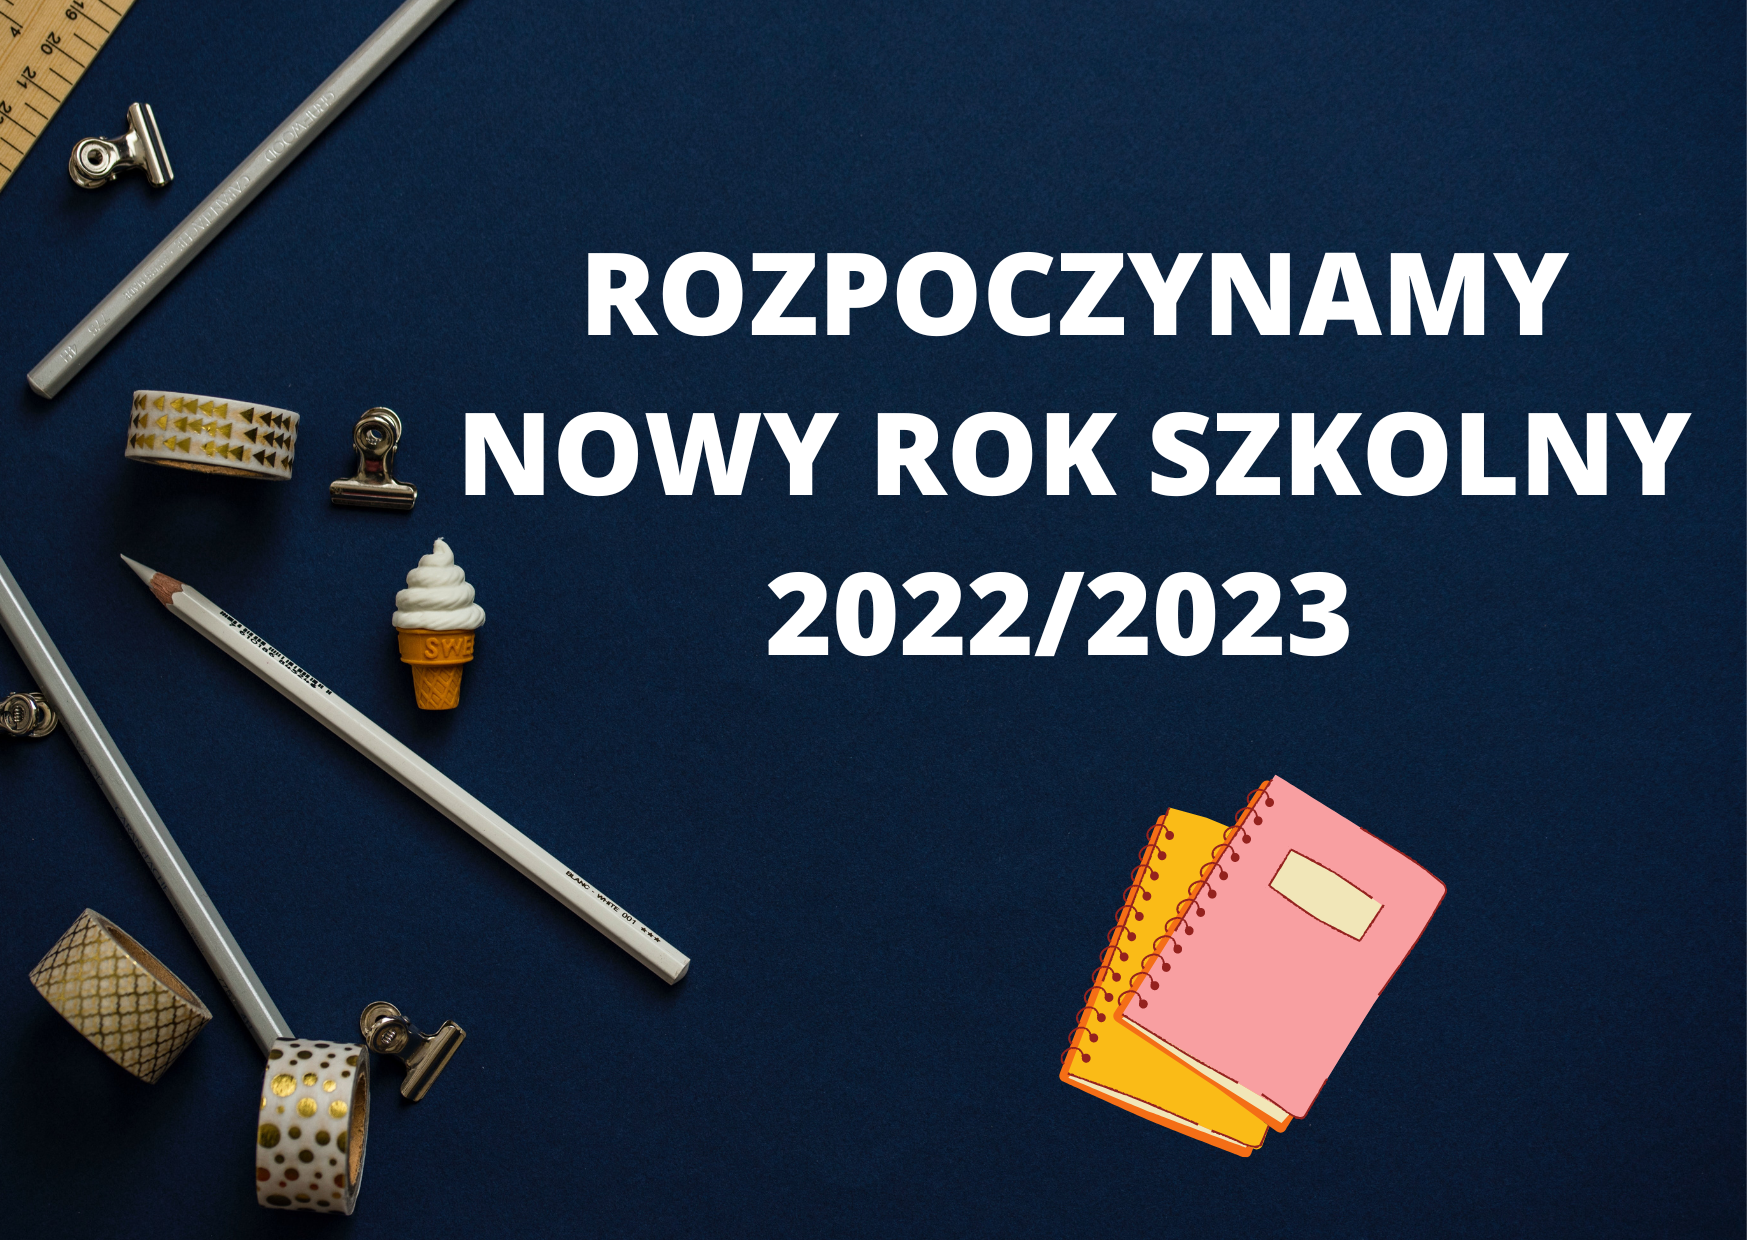 Rozpoczynamy nowy rok szkolny 2022/2023 grafika